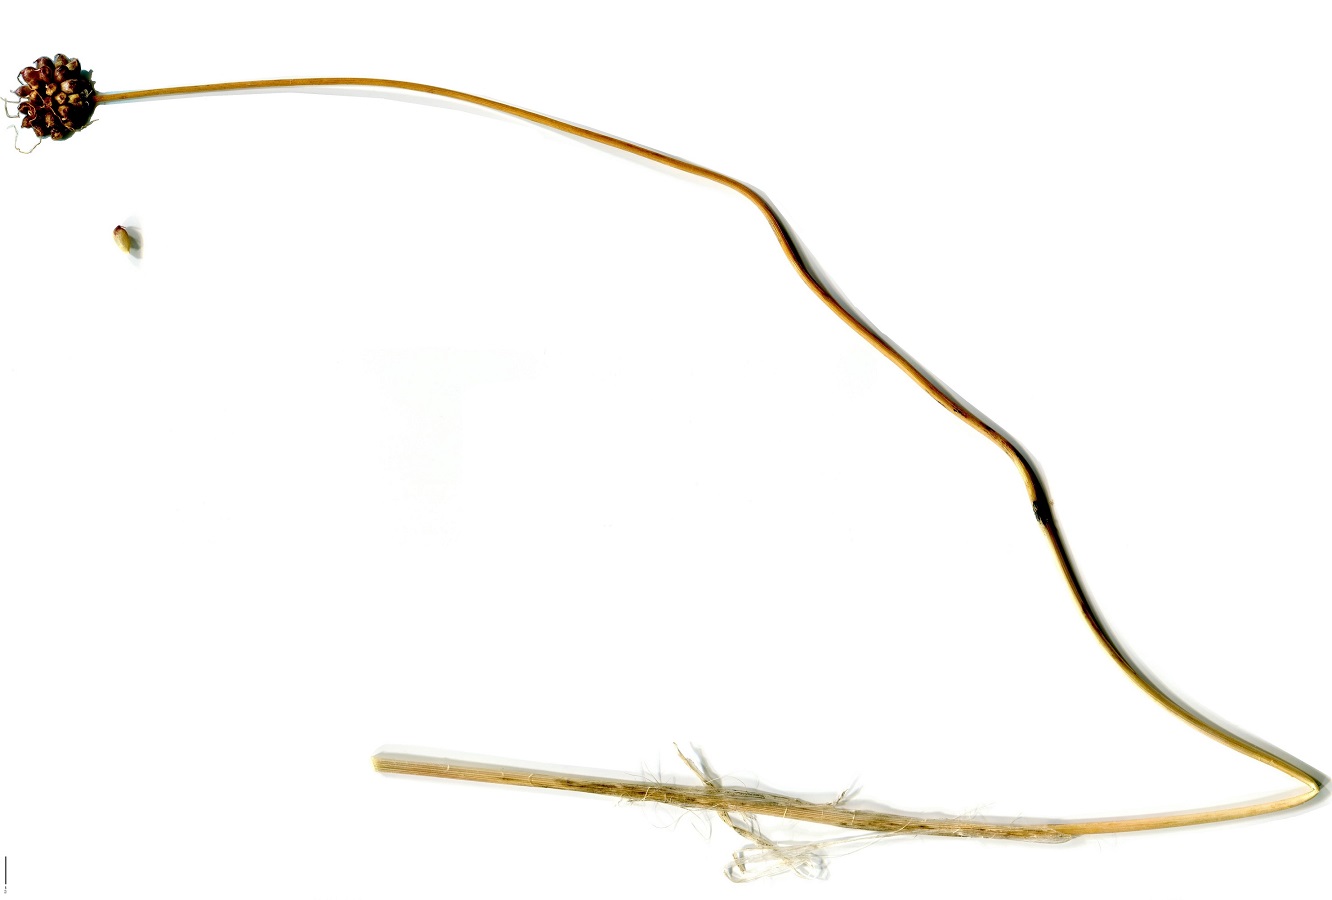 Allium vineale var. compactum (Amaryllidaceae)